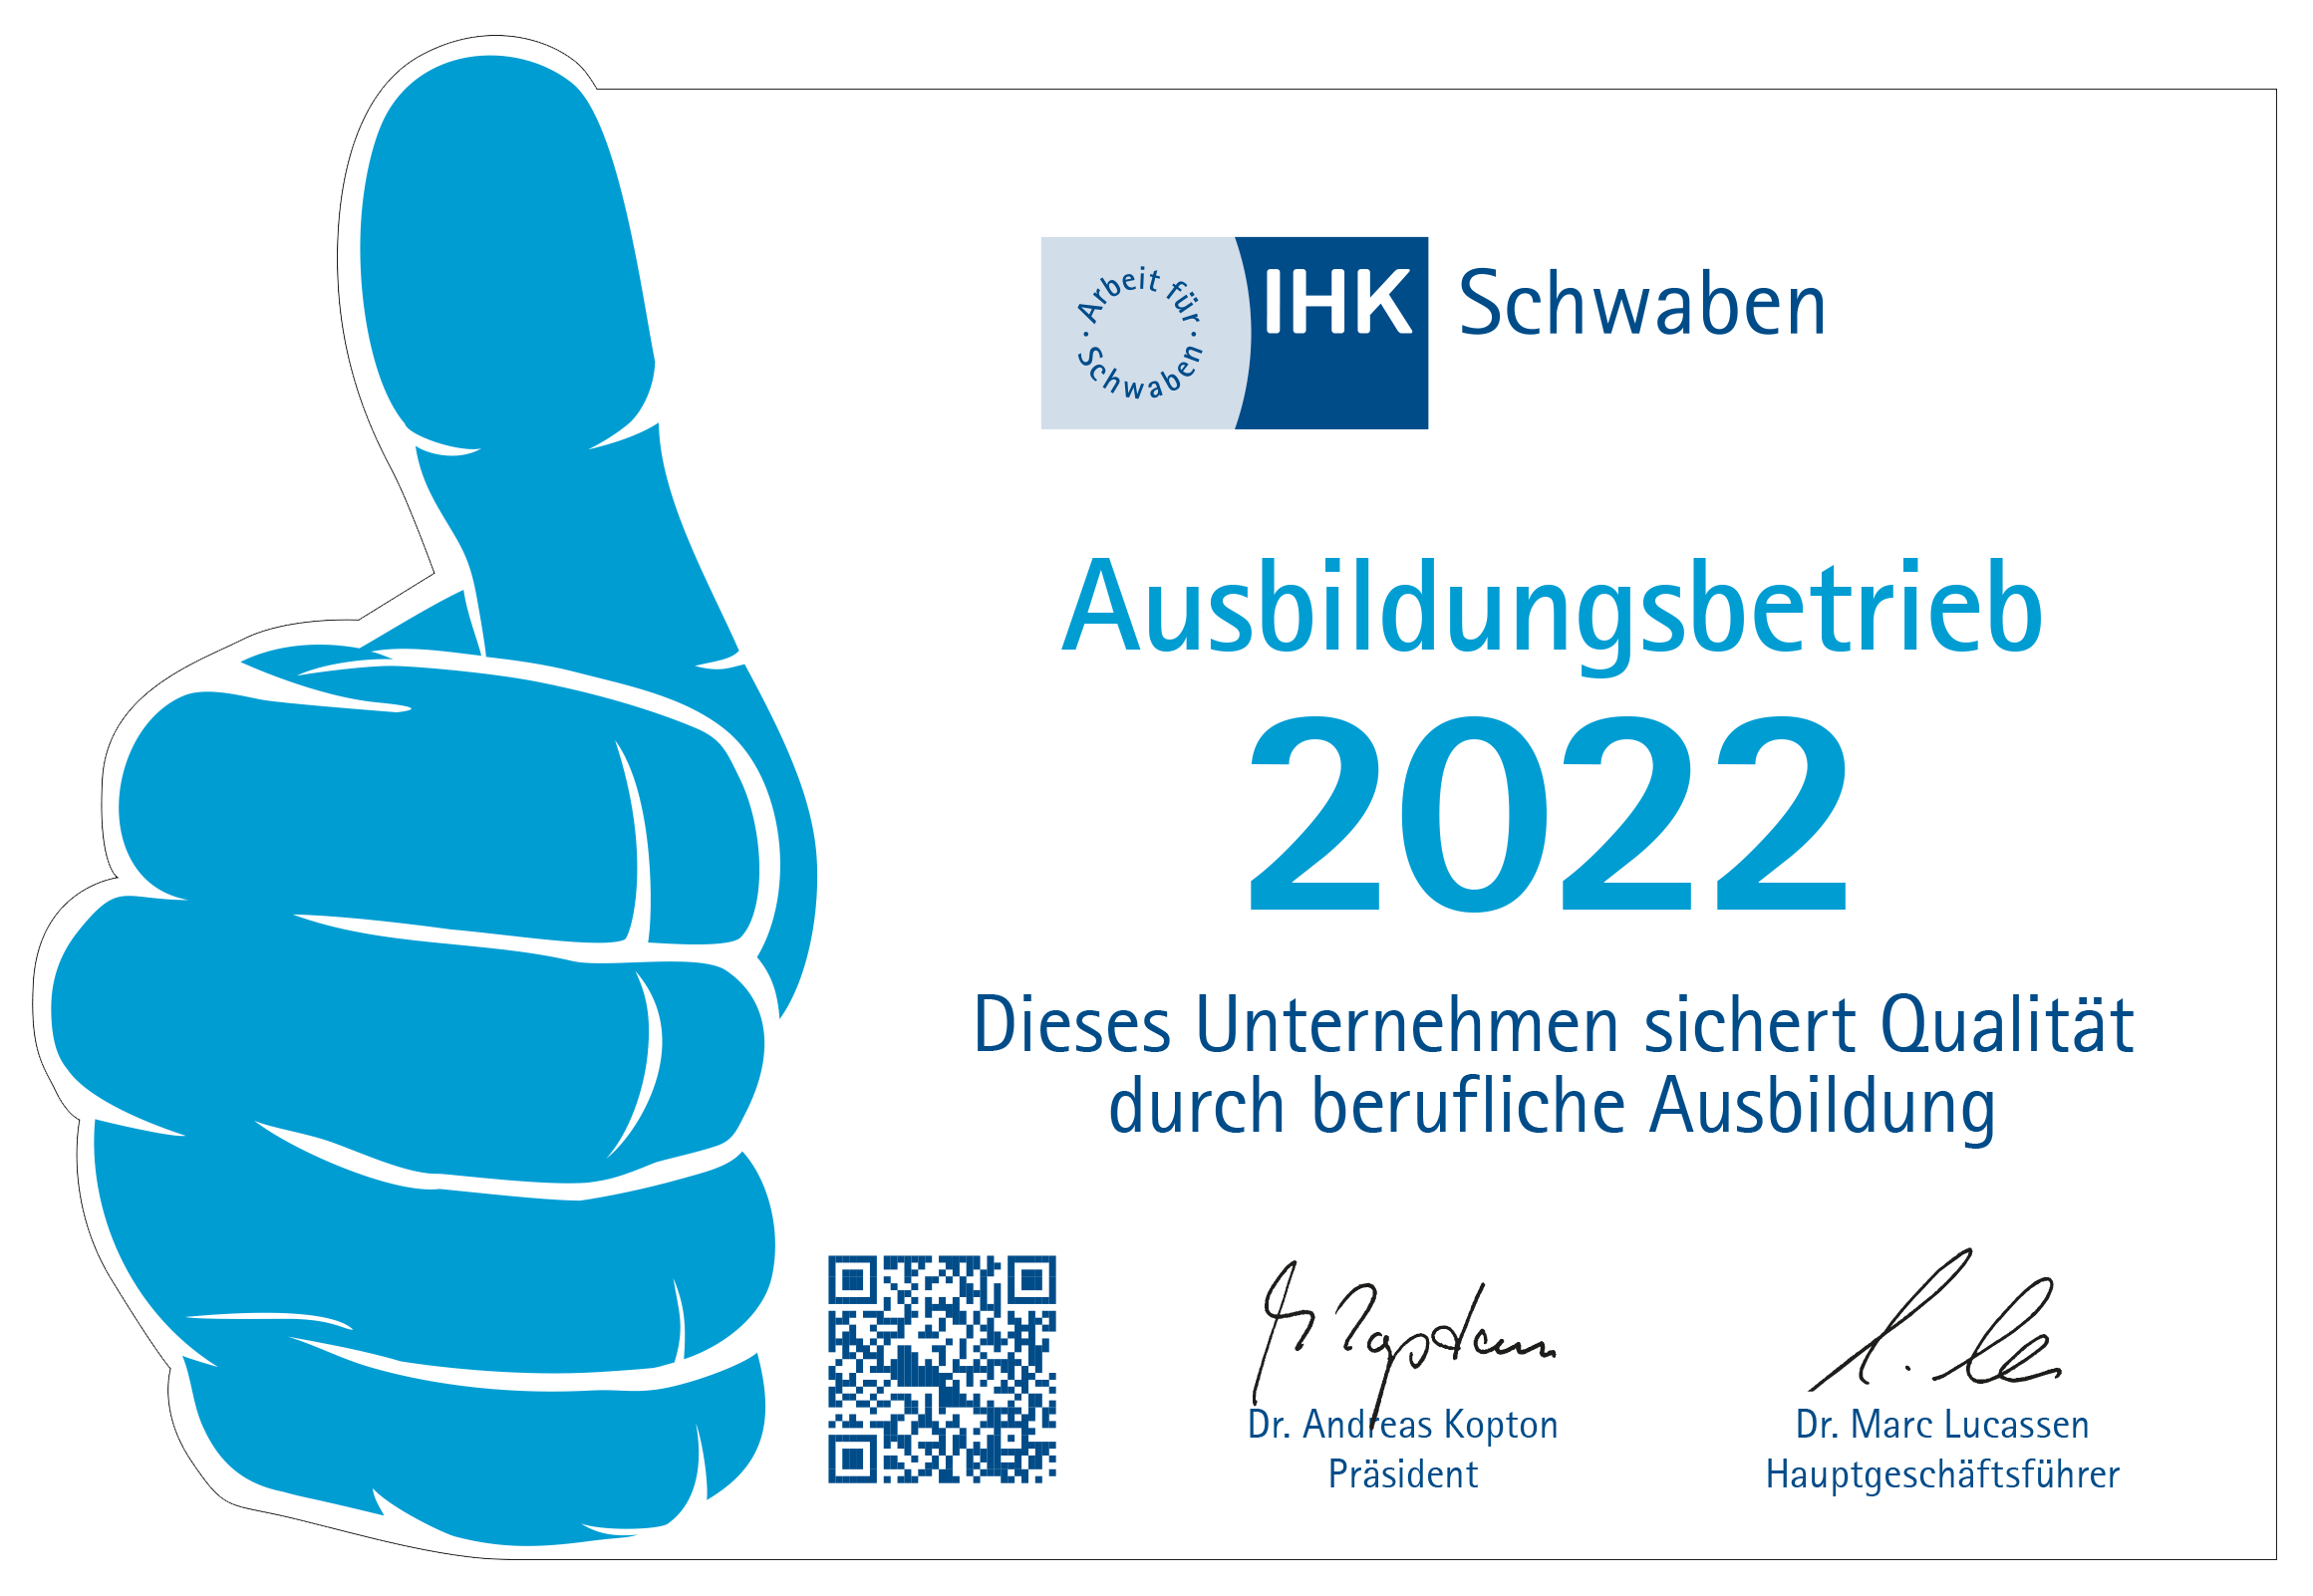 Ausbildungsbetrieb 2022 IHK Schwaben